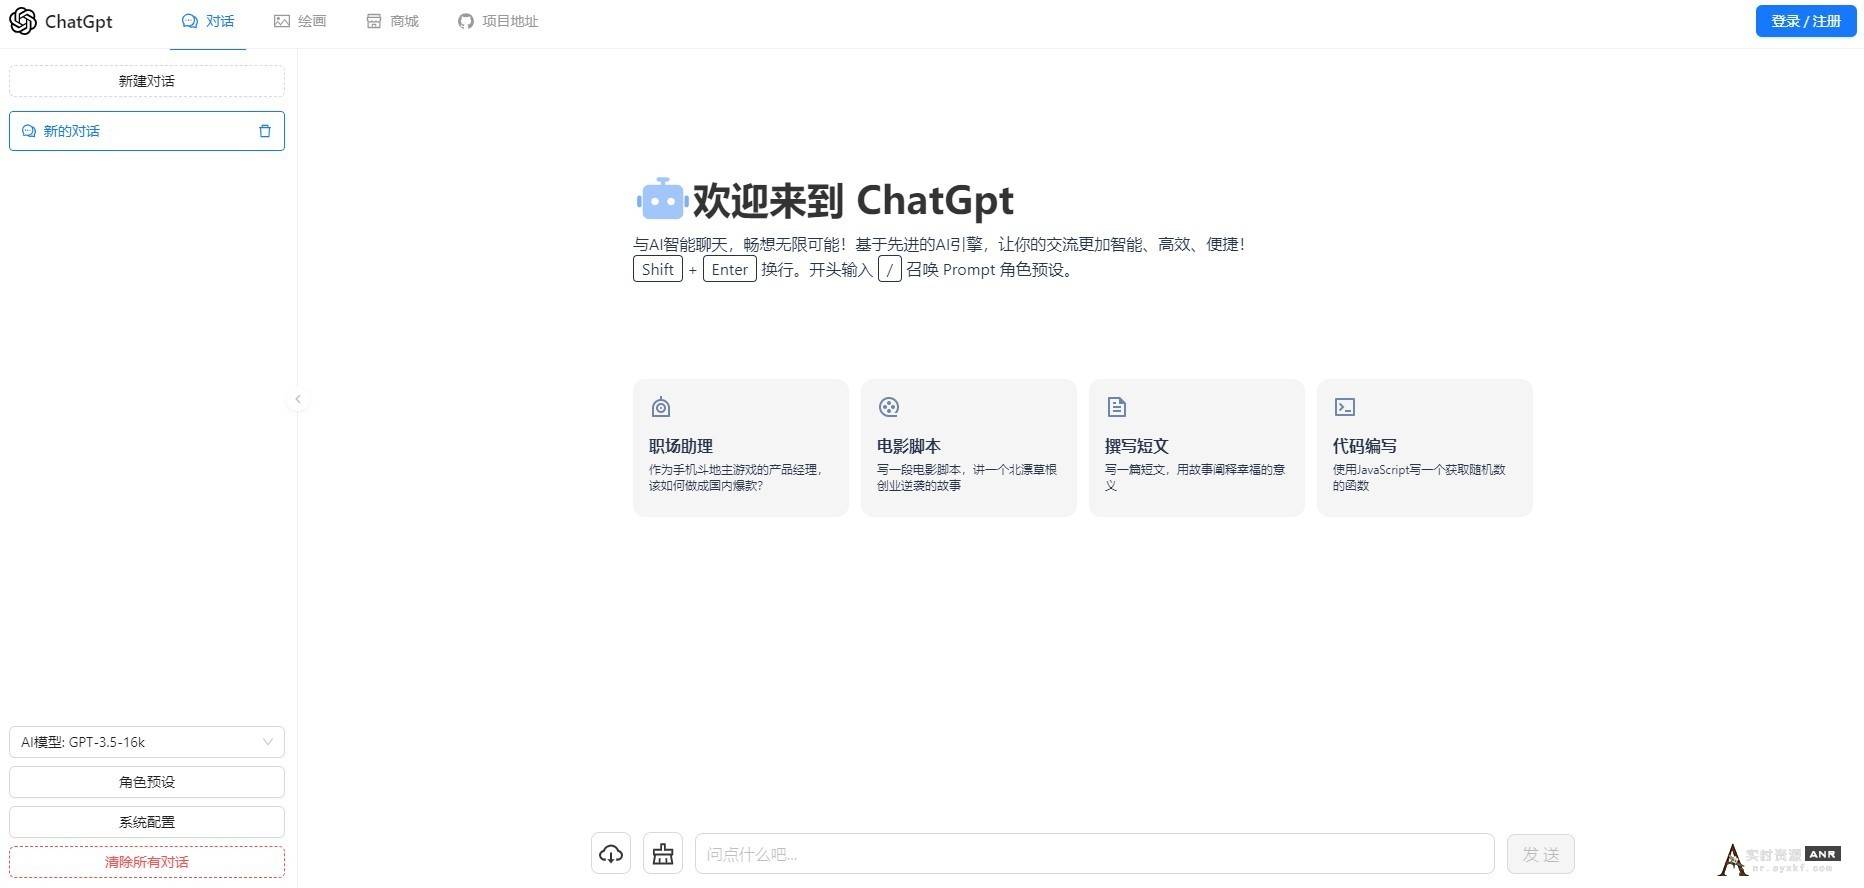 一款可商业化的ChatGpt Web源码 网络资源 图1张